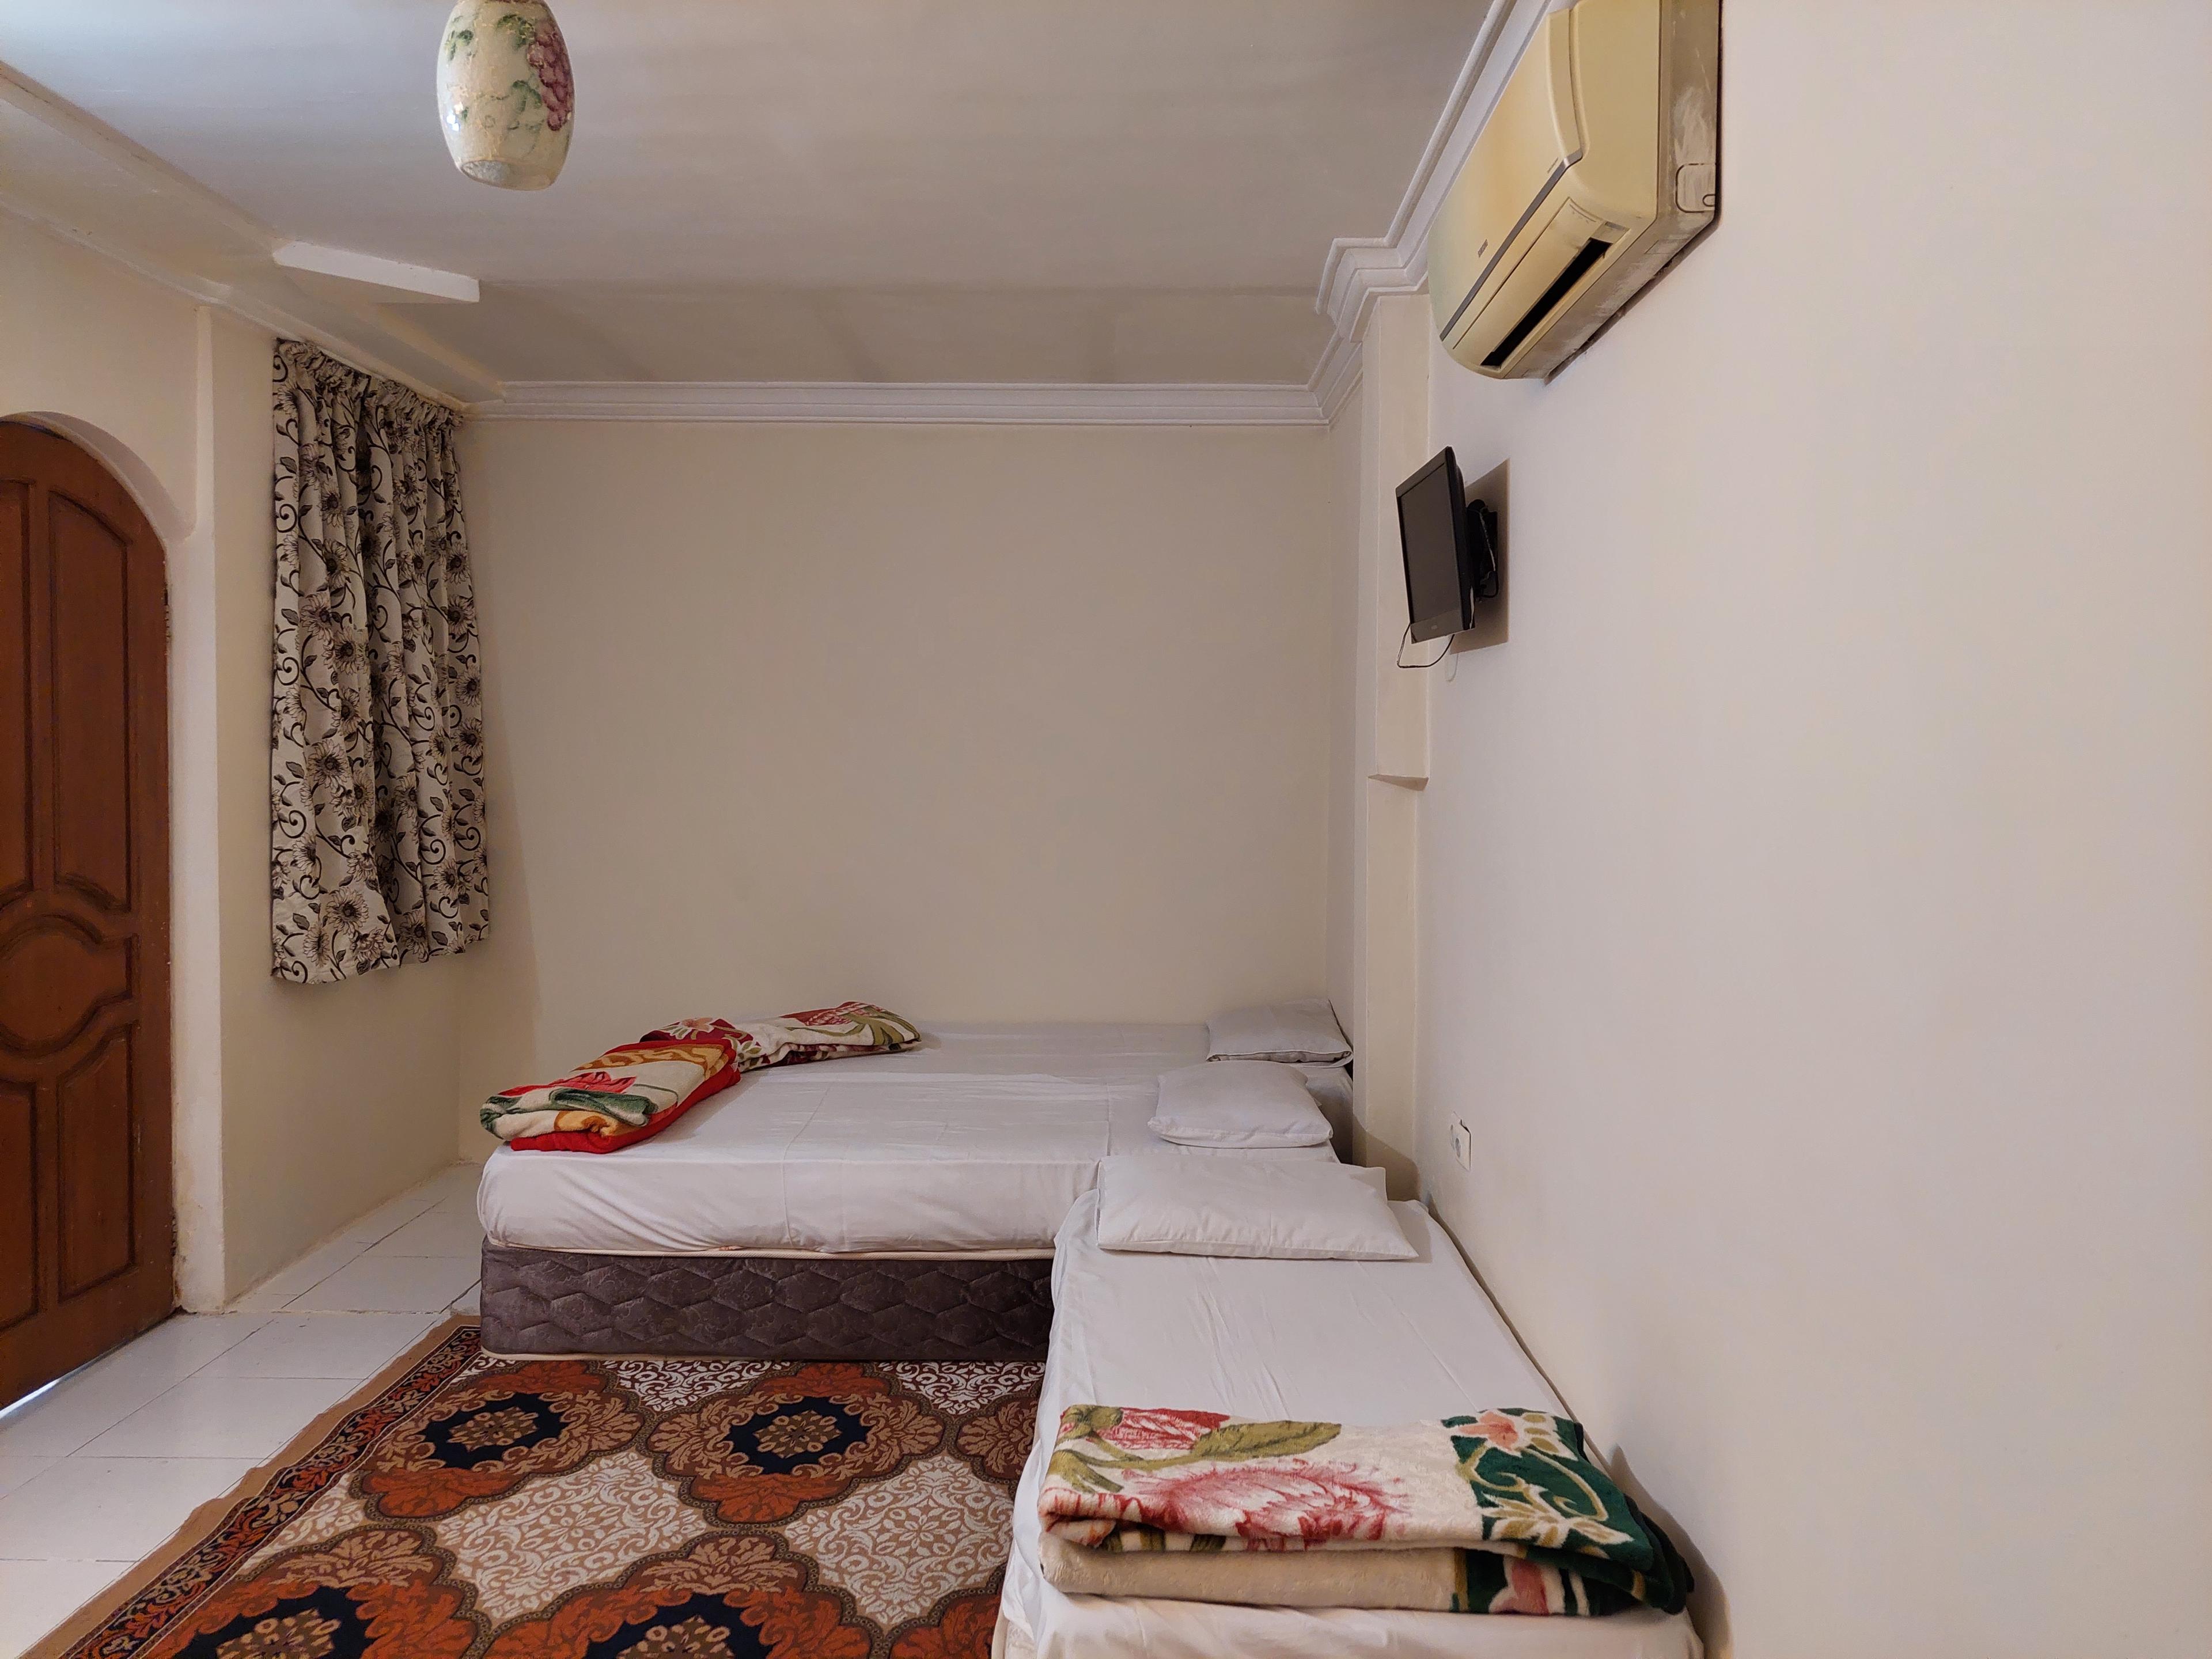  اجاره هتل در مشهد نزدیک حرم